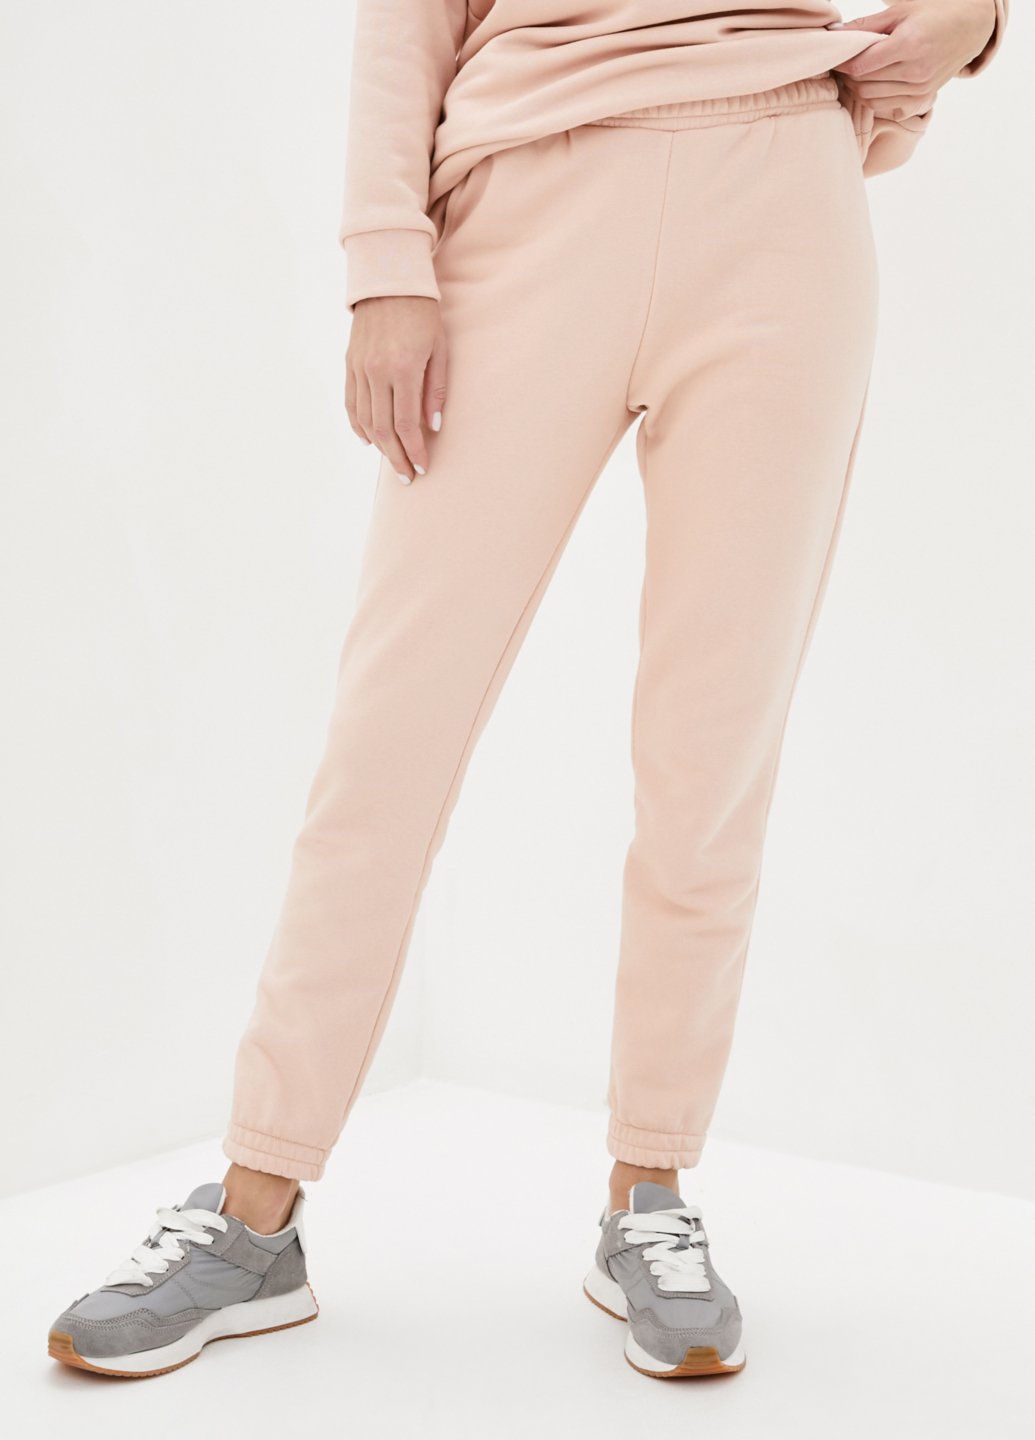 Купить Спортивные штаны женские Merlini Мадрид 600000048 - Розовый, 42-44 в интернет-магазине